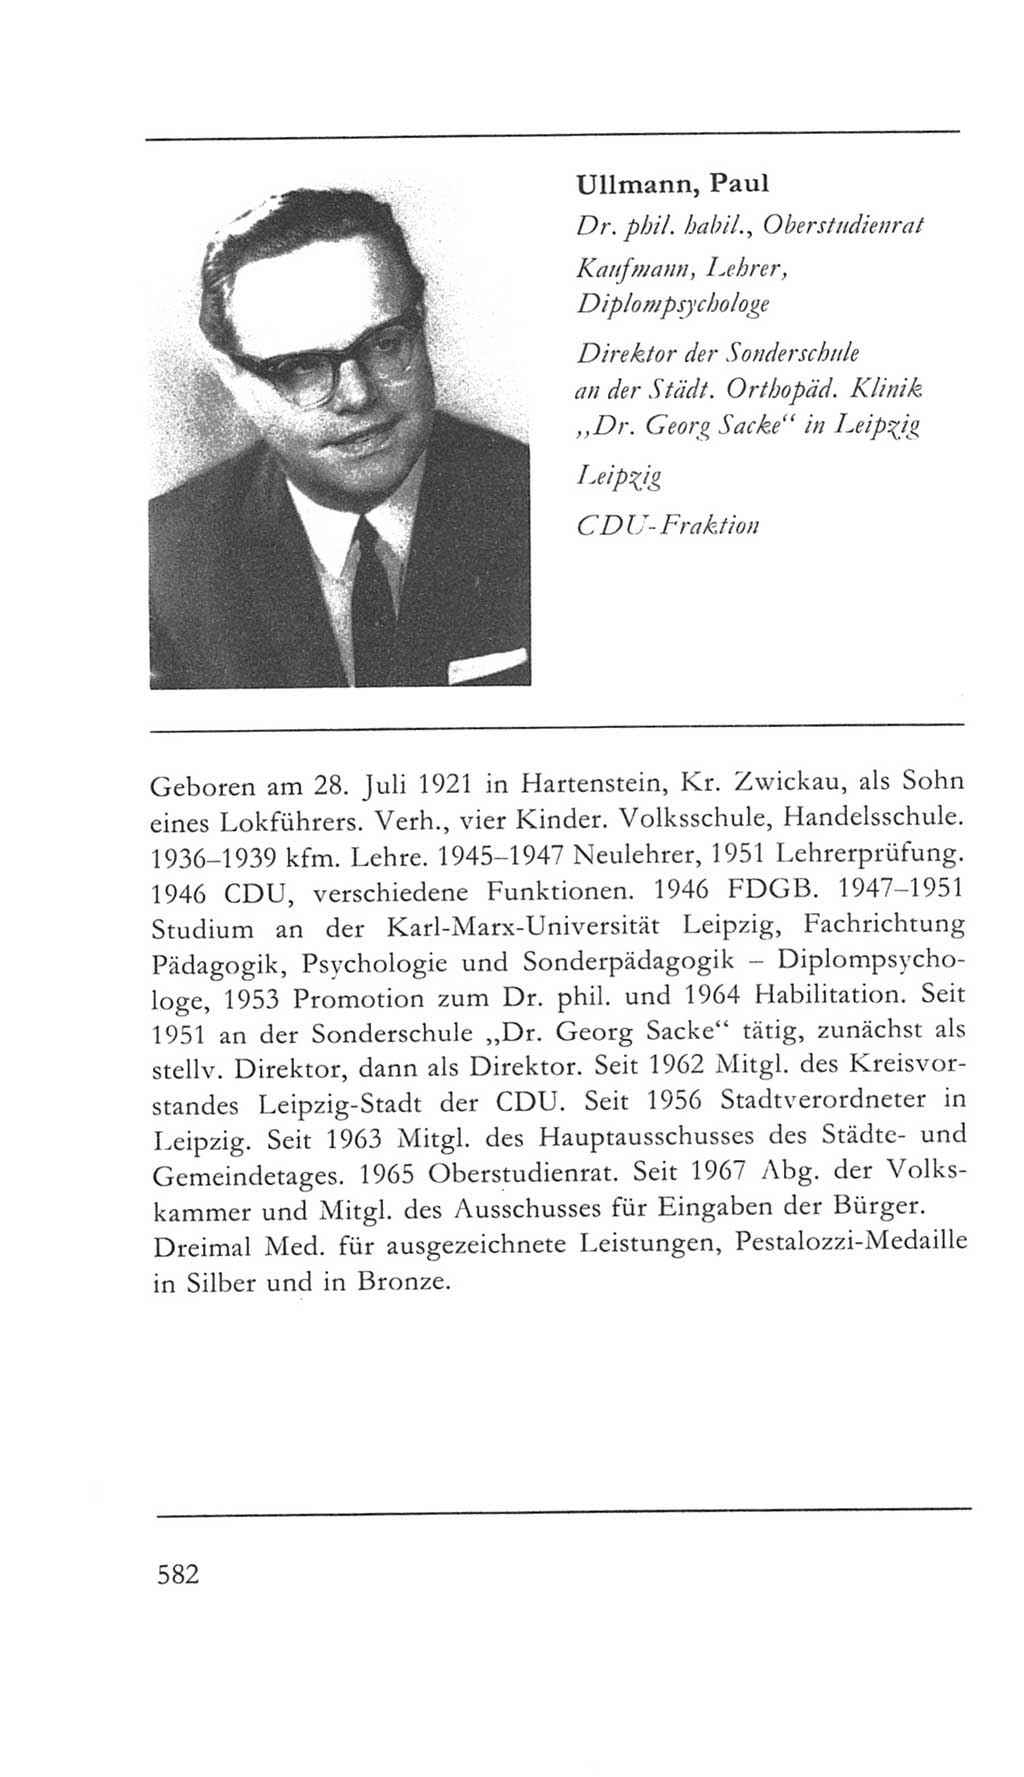 Volkskammer (VK) der Deutschen Demokratischen Republik (DDR) 5. Wahlperiode 1967-1971, Seite 582 (VK. DDR 5. WP. 1967-1971, S. 582)